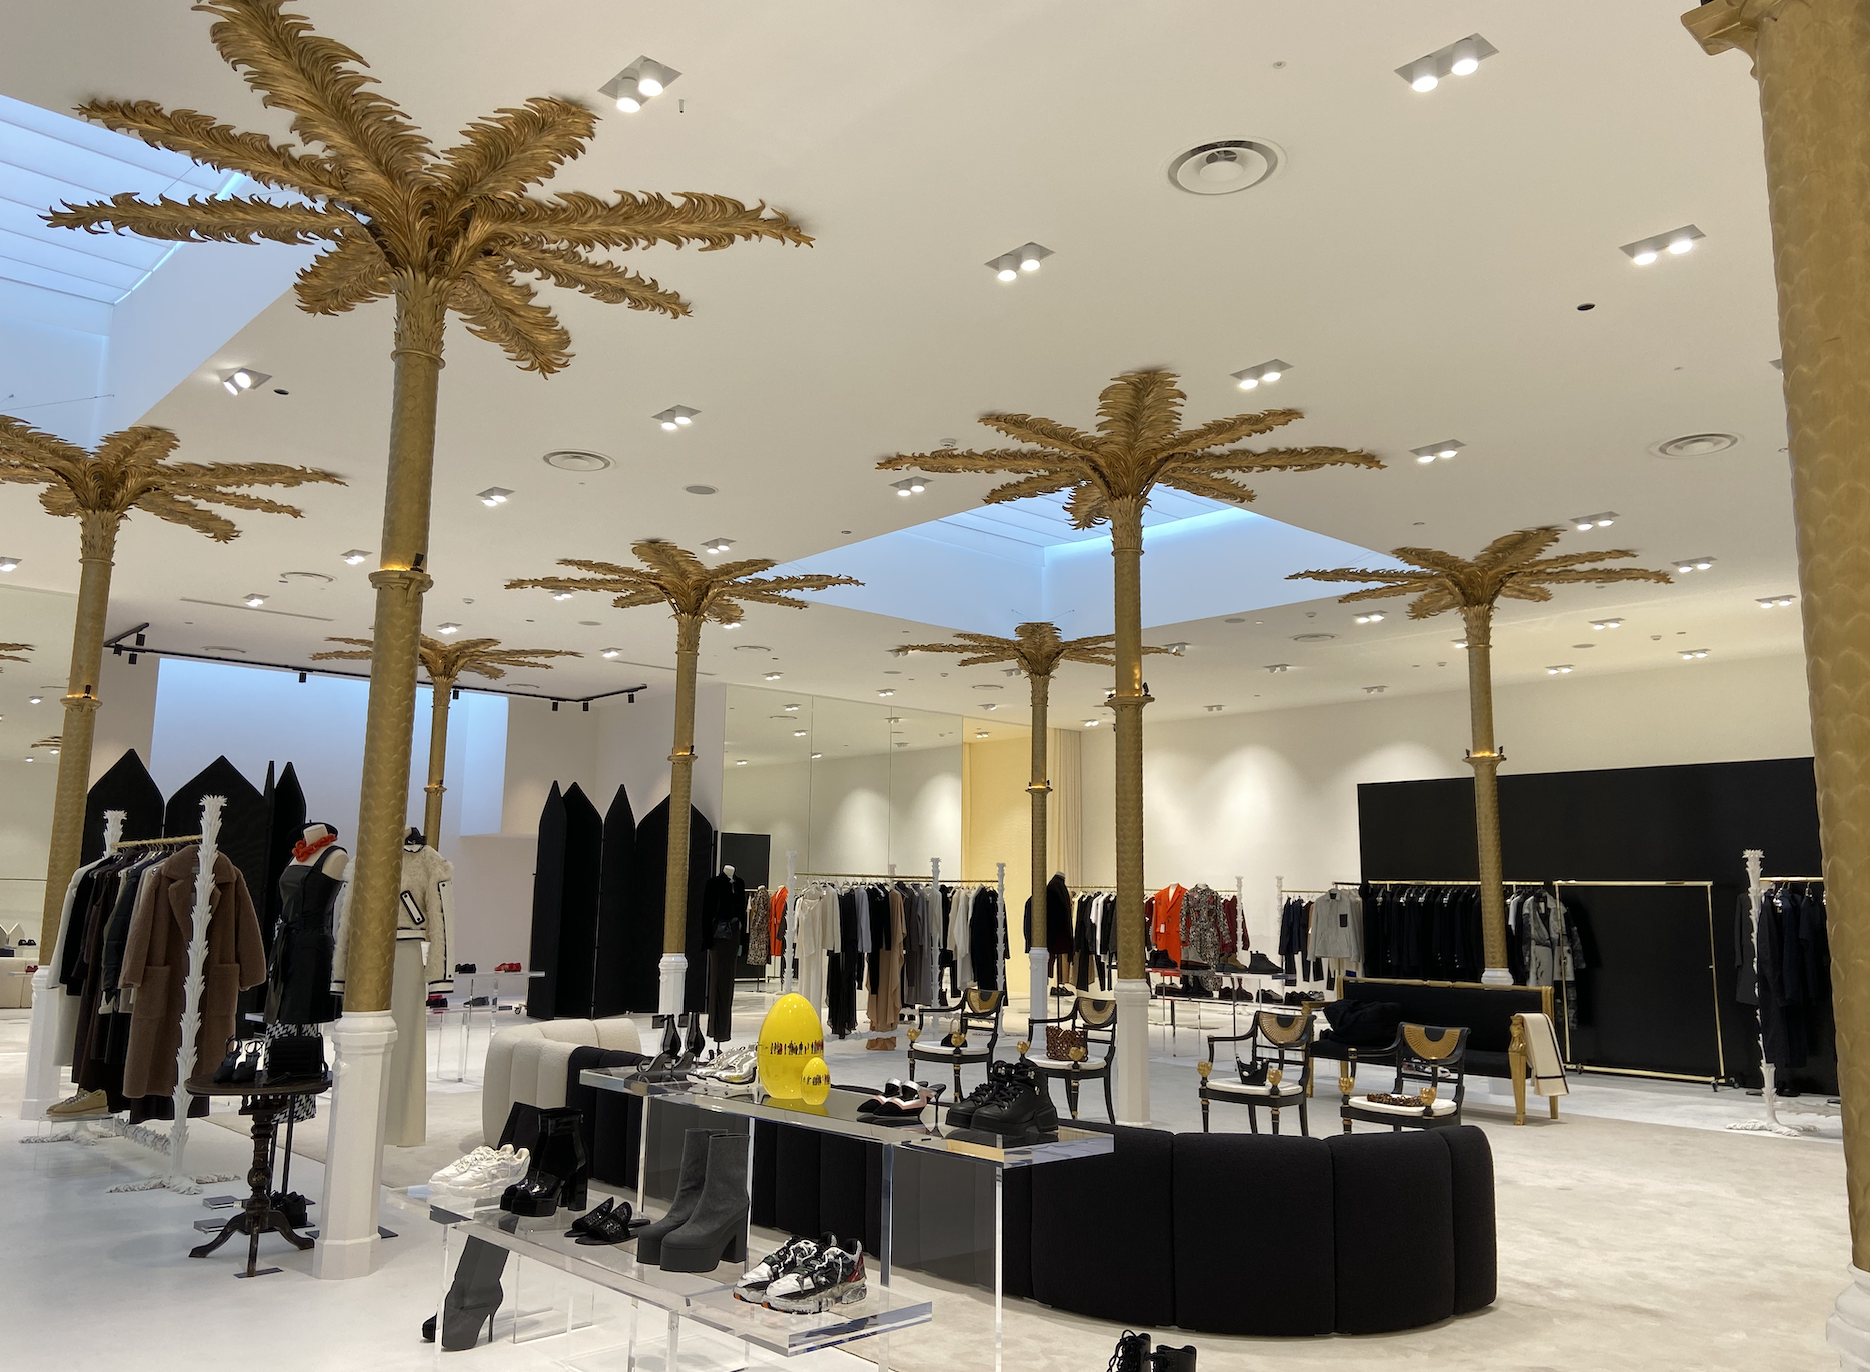 Colunas em forma de palmeiras douradas fazem suporte para o interior da loja (Foto: Bárbara Cassou)